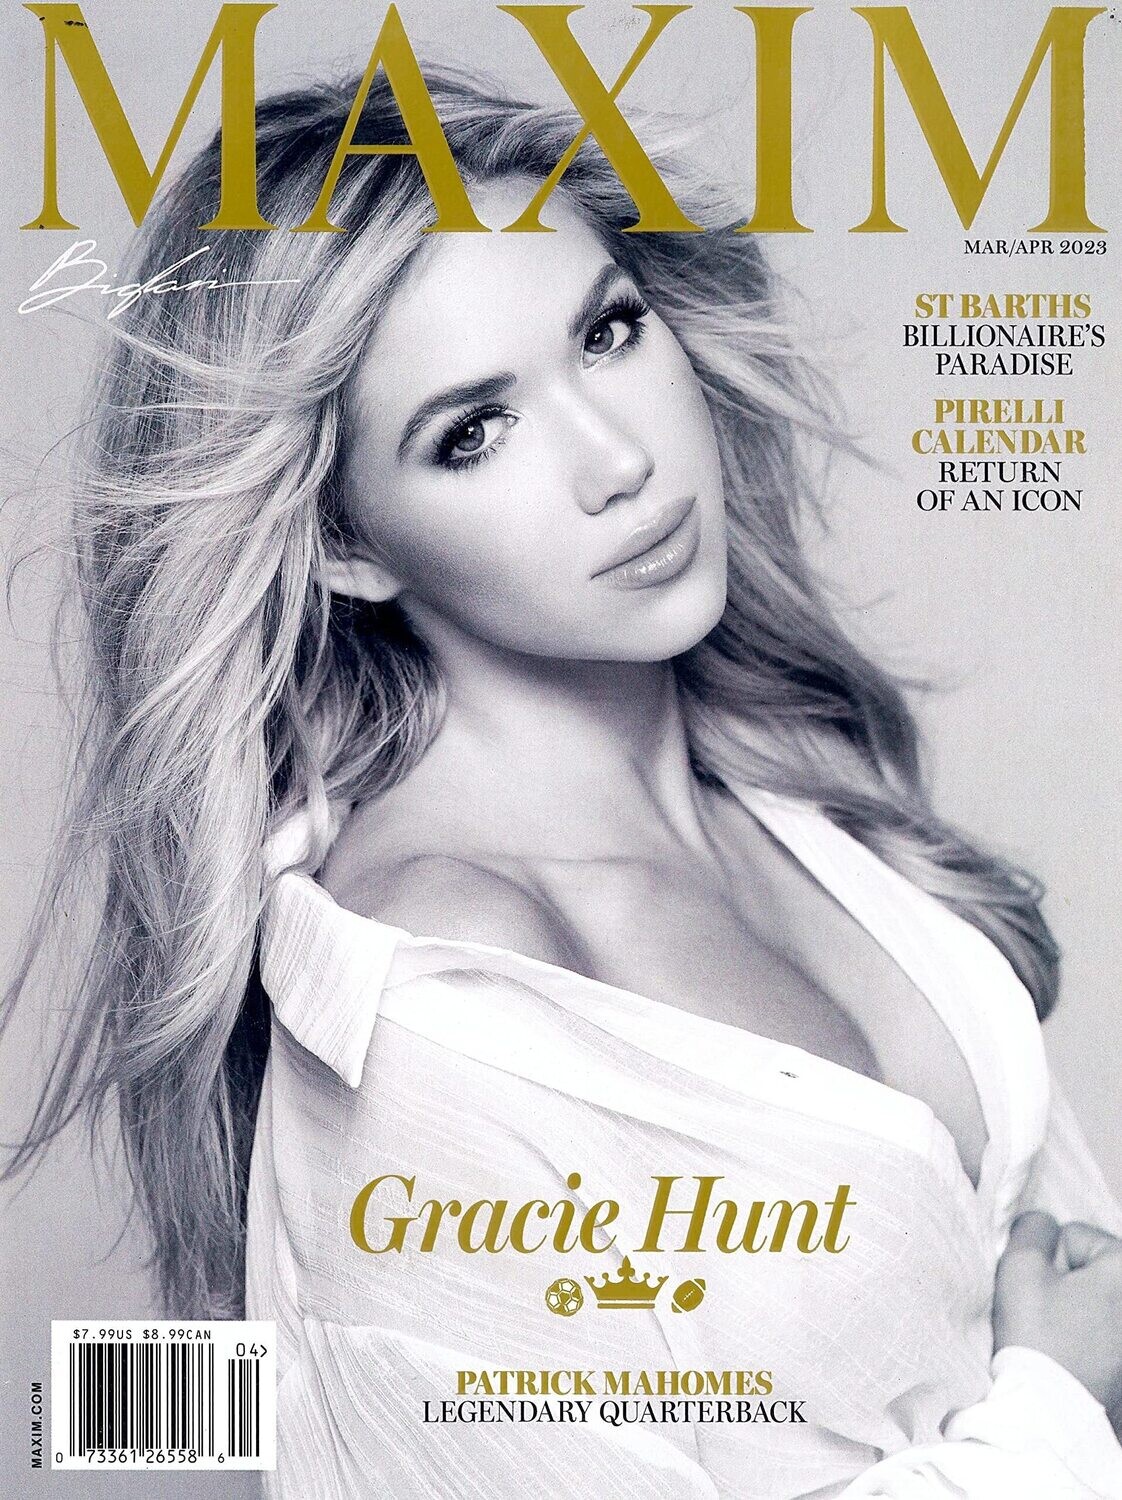 Gracie Hunt: Maxim Magazine Mar/Apr 2023